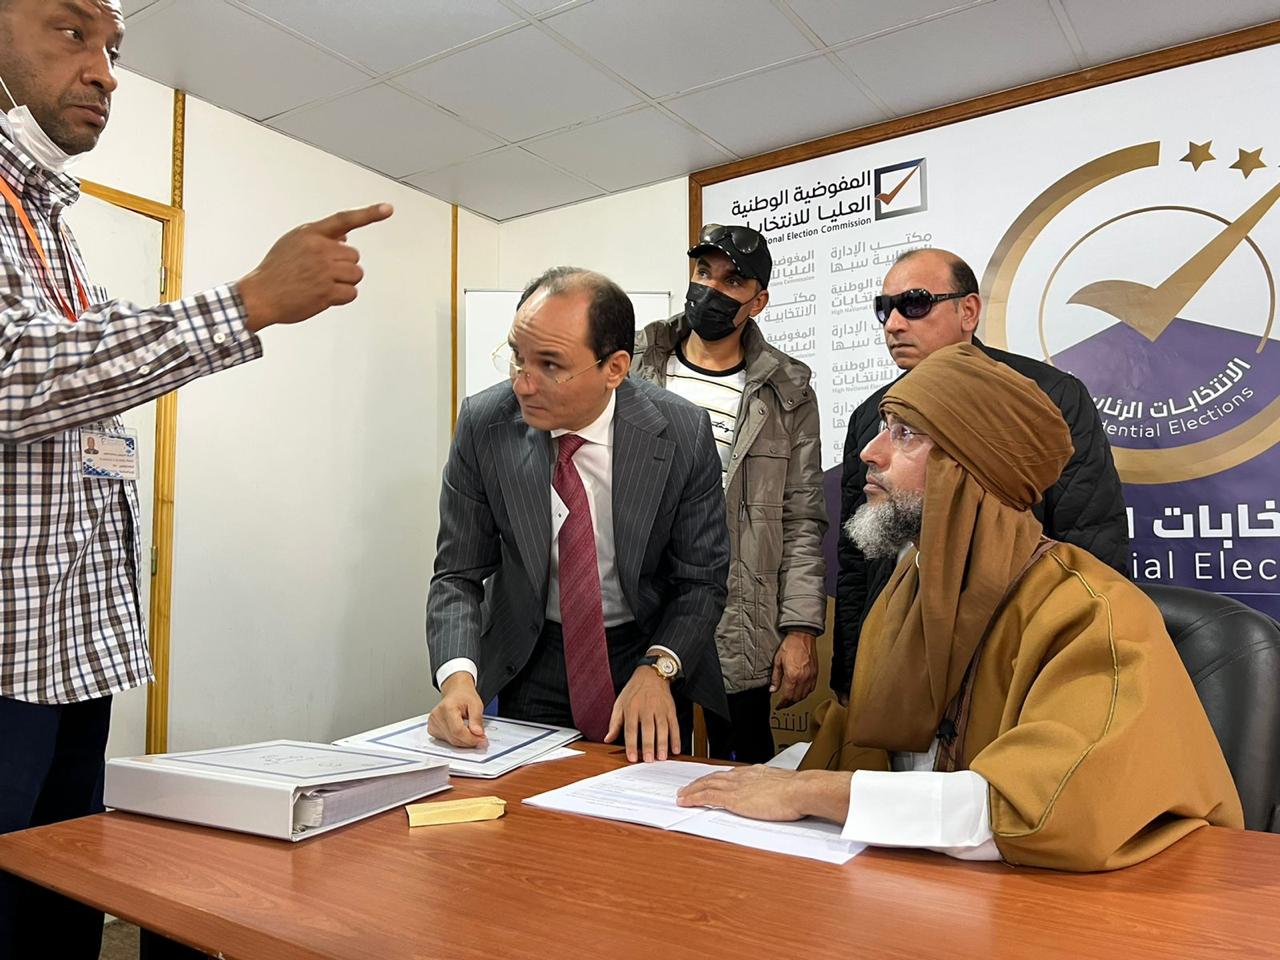 سيف الإسلام القذافي يقدم أوراق ترشحه للانتخابات الرئاسية الليبية